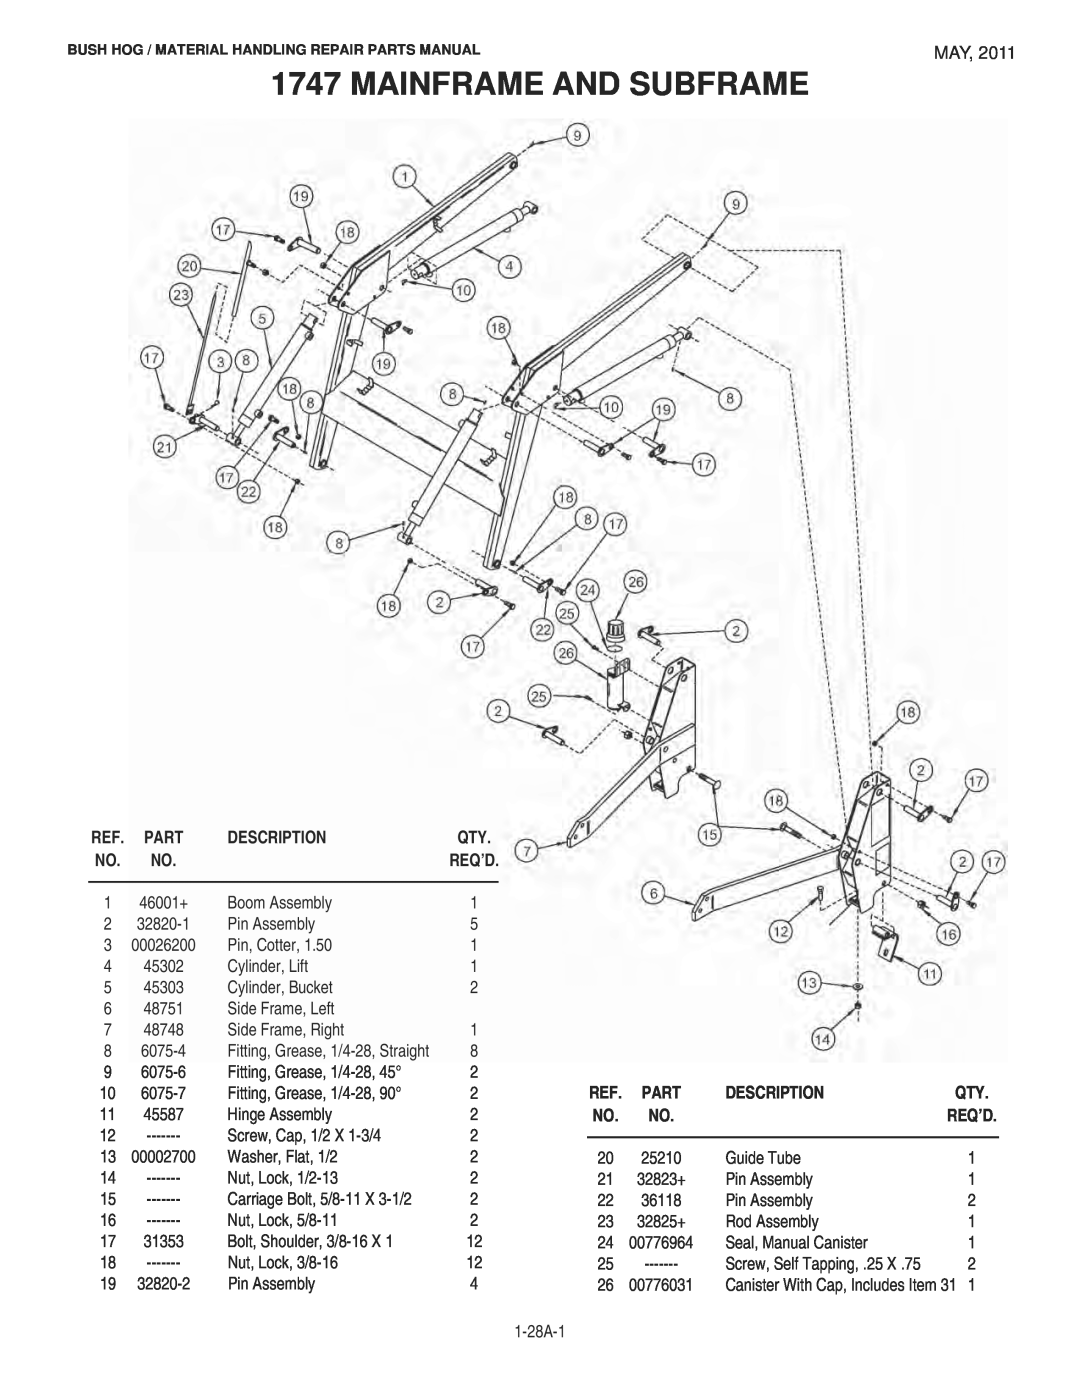 Bush Hog 1747 manual Mainframe And Subframe, Description, Req’D 